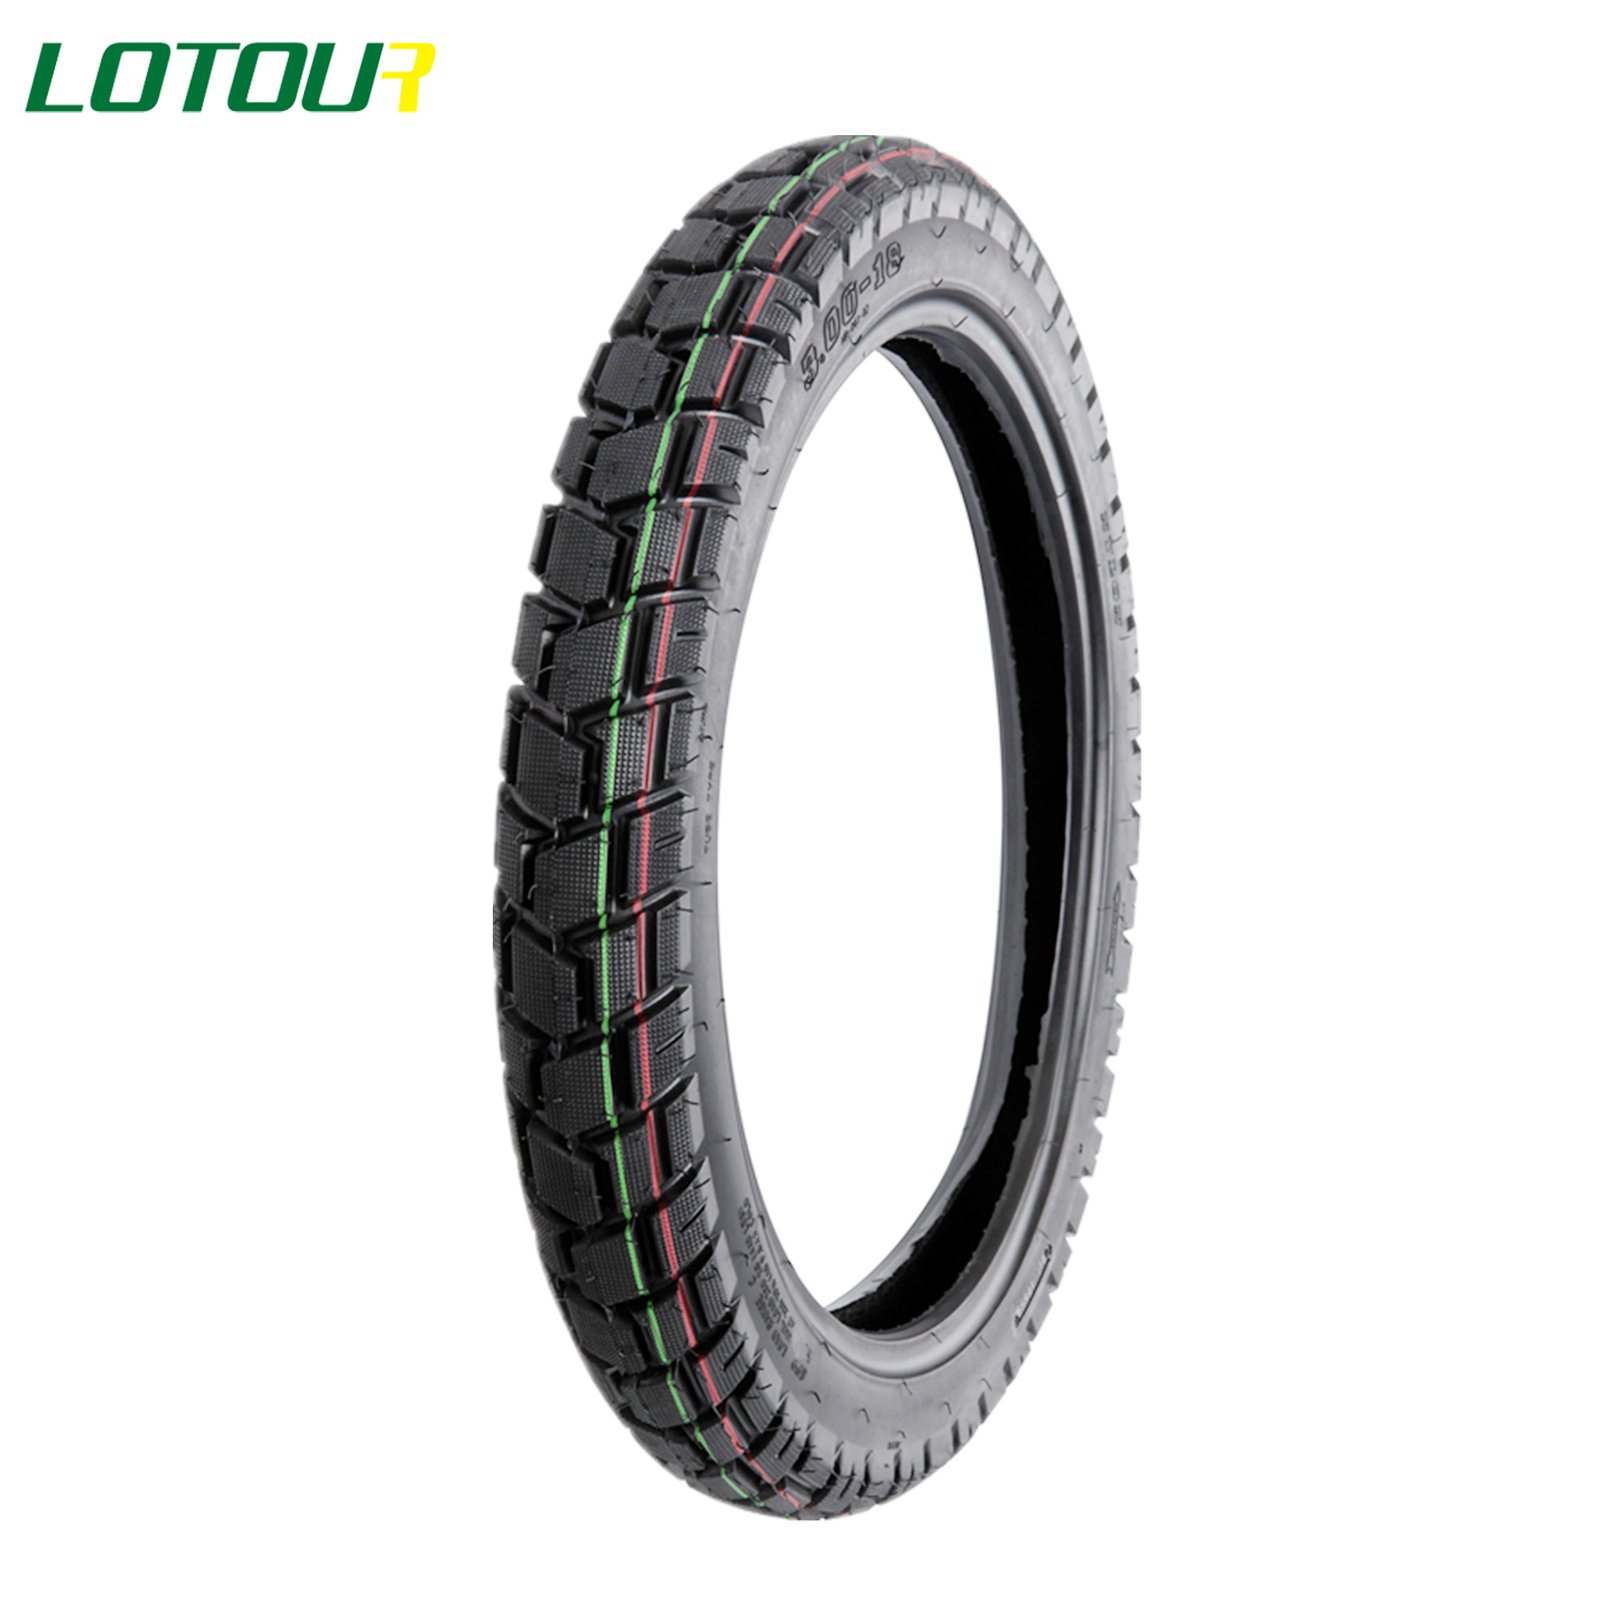 Lotour Tire M2105B